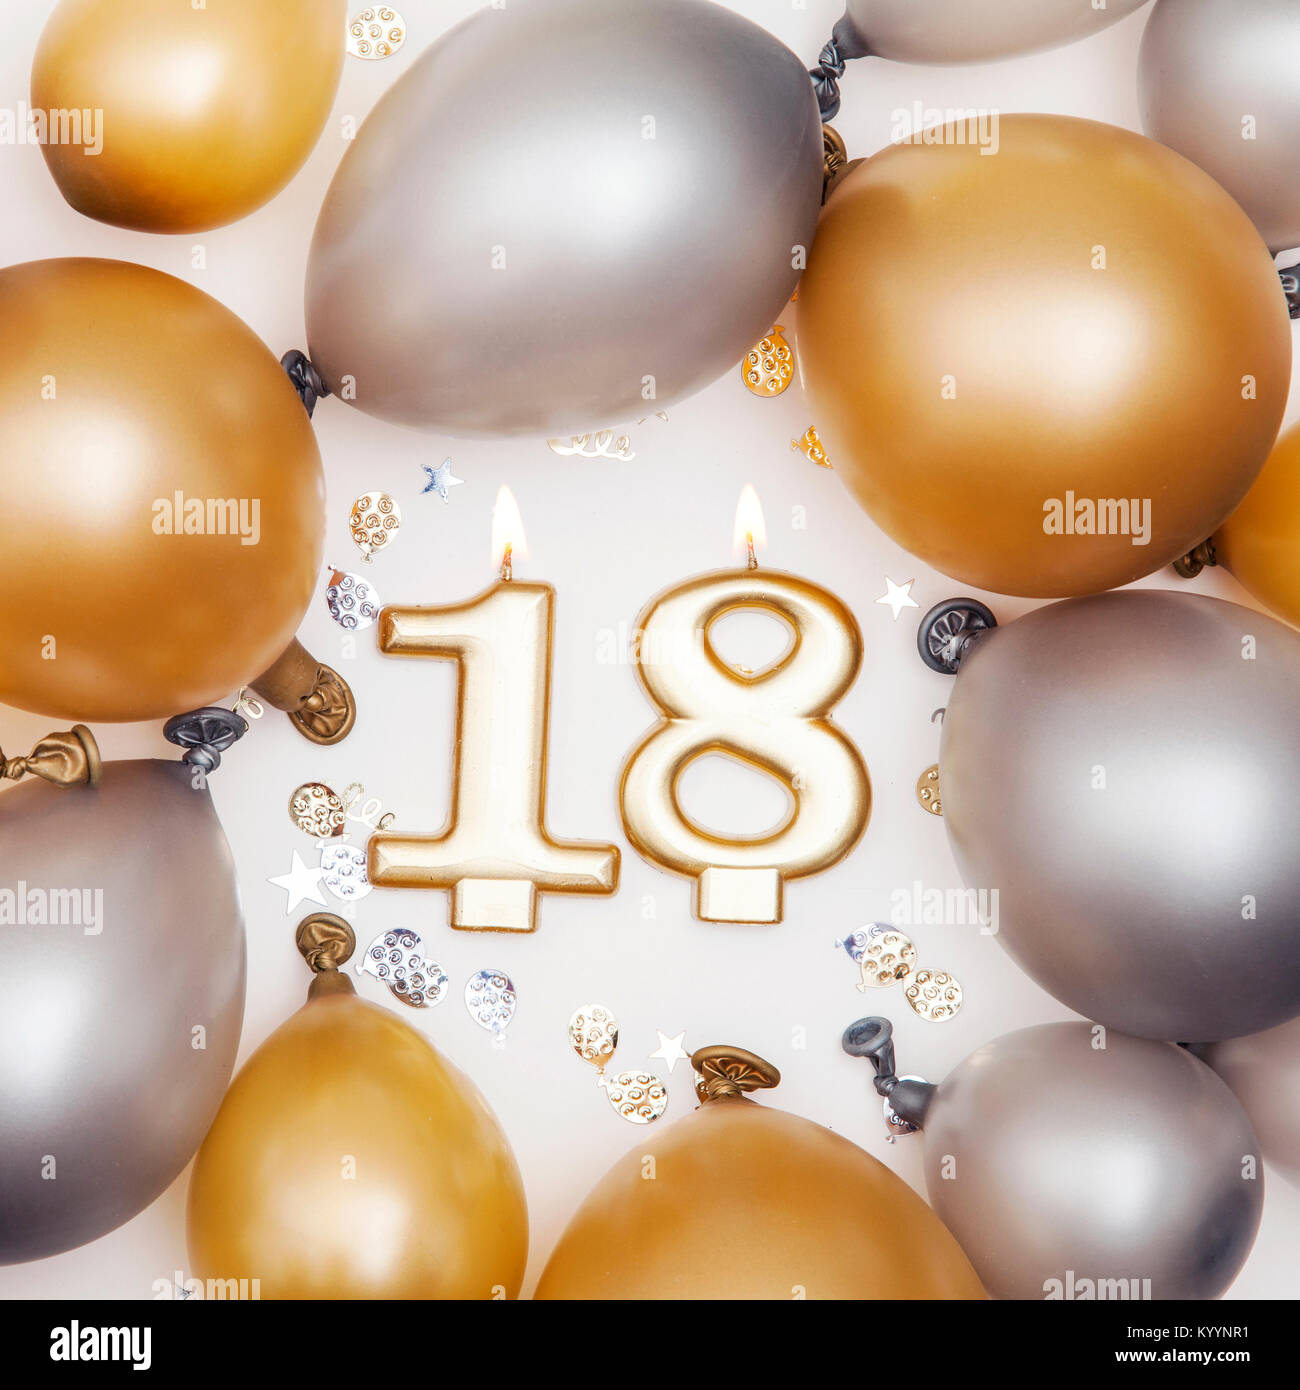 Aniversario Cumpleaños velas mostrando Nr. 18 Fotografía de stock